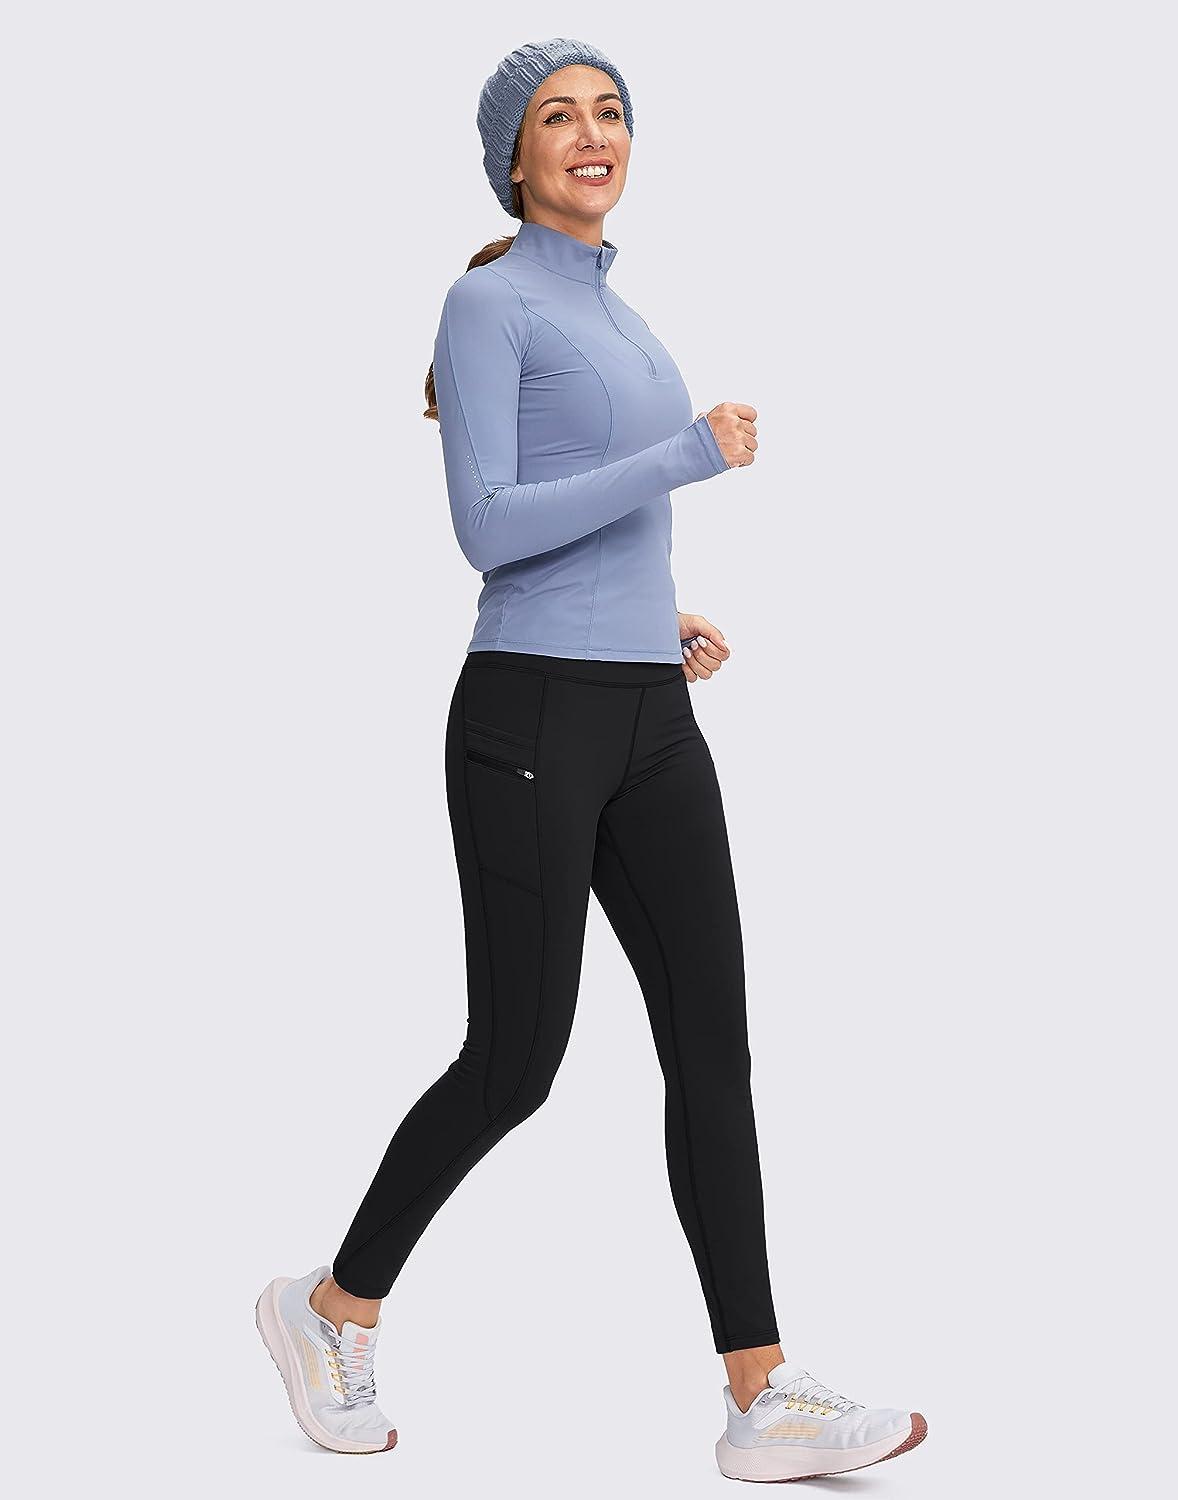 Winter Fleece-Lined Leggings For Women Gym Wear Workout Pants Warm